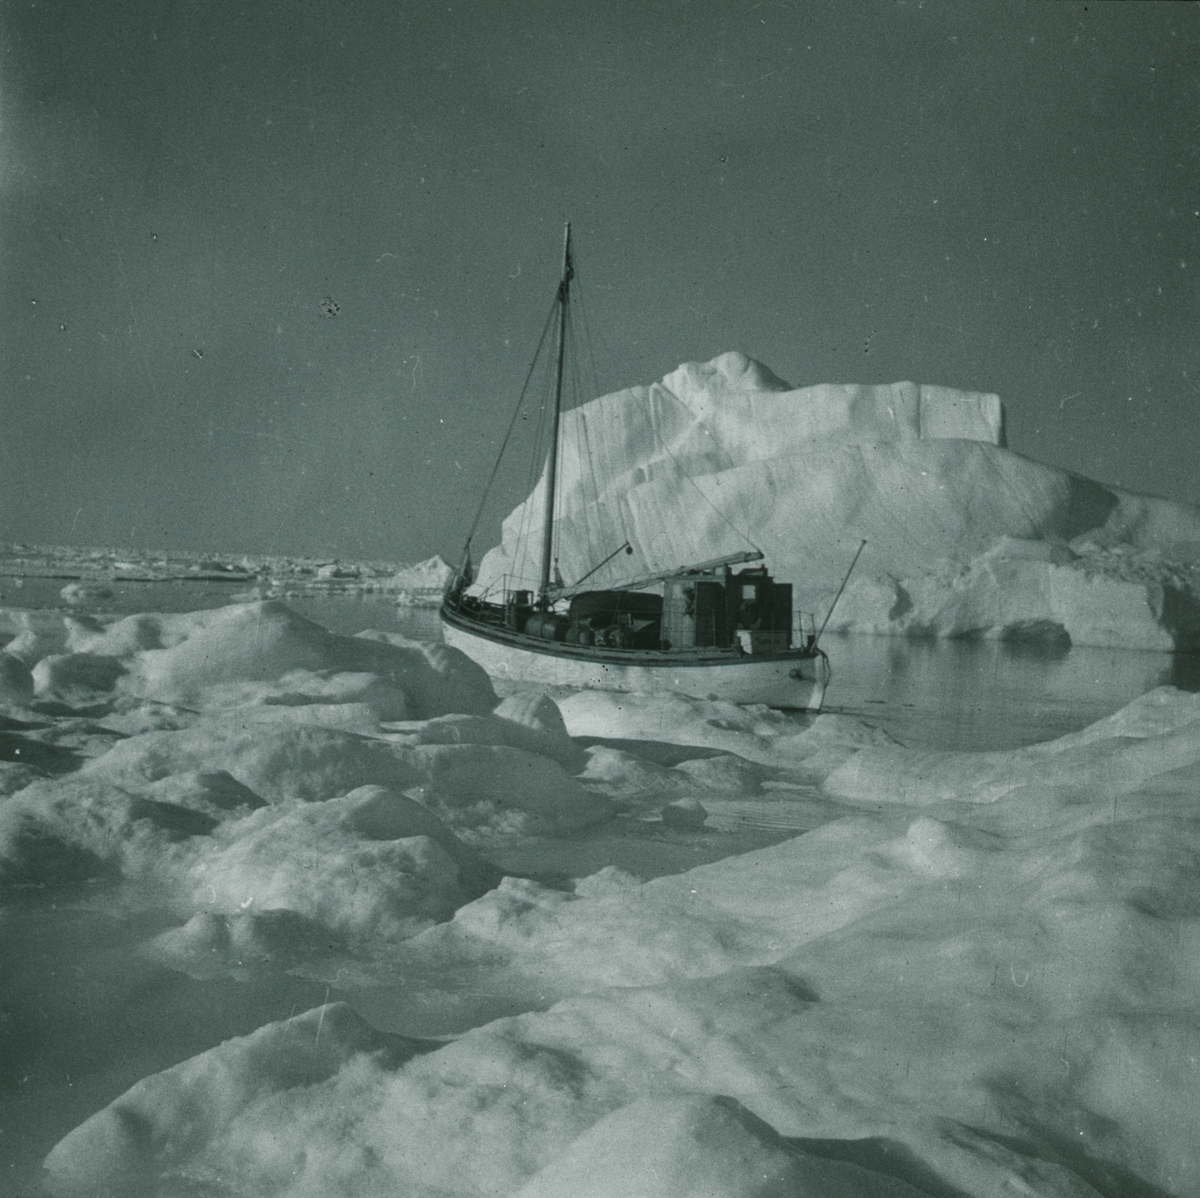 Fotografi från expedition till Spetsbergen. Motiv av båt bland isberg.